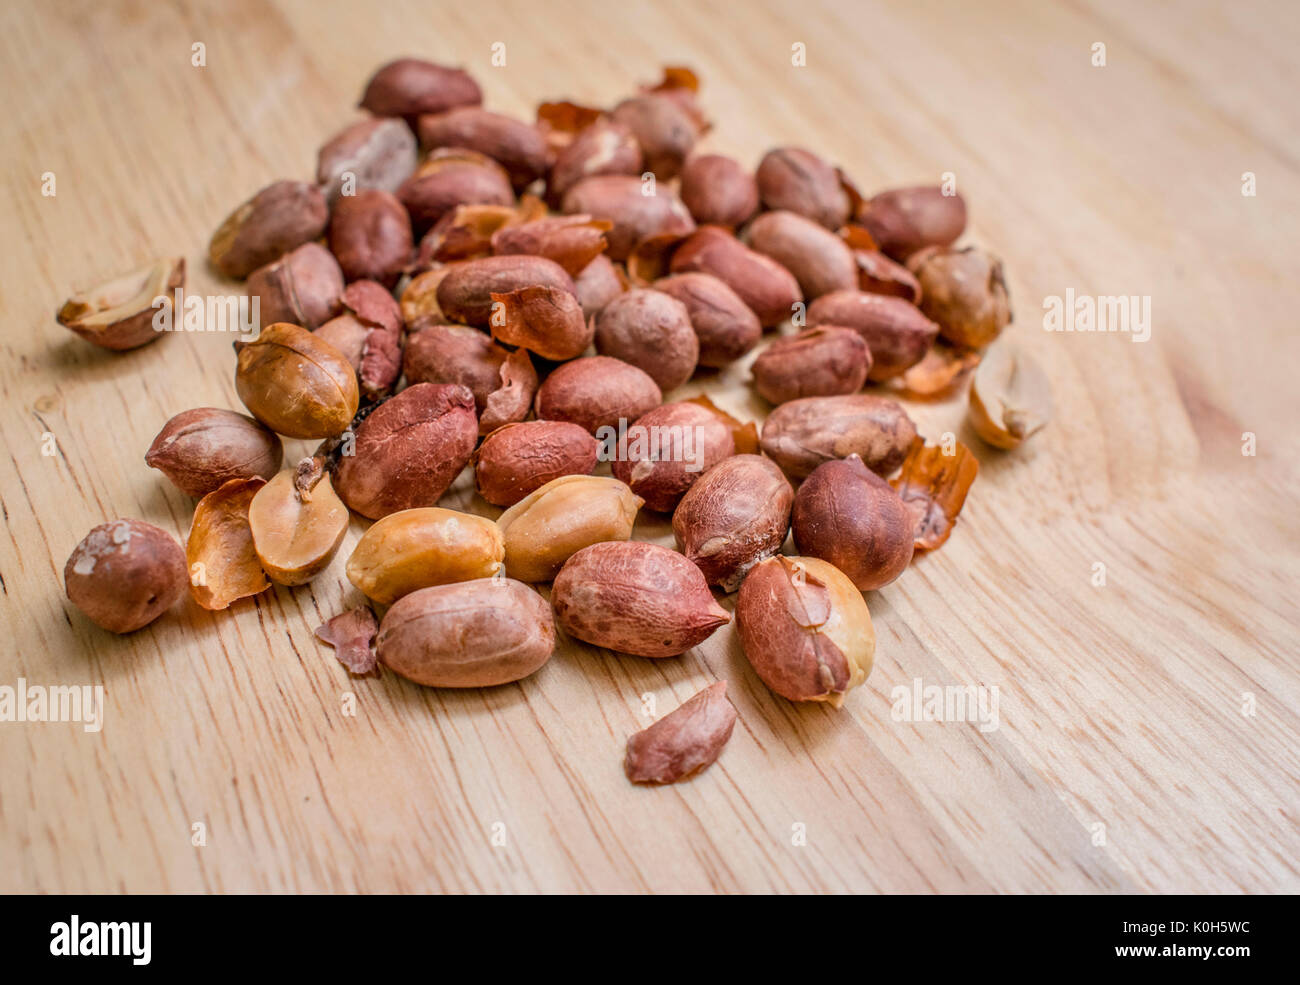 Cotti e arachidi salate sulla parte superiore di un tagliere di legno Foto Stock